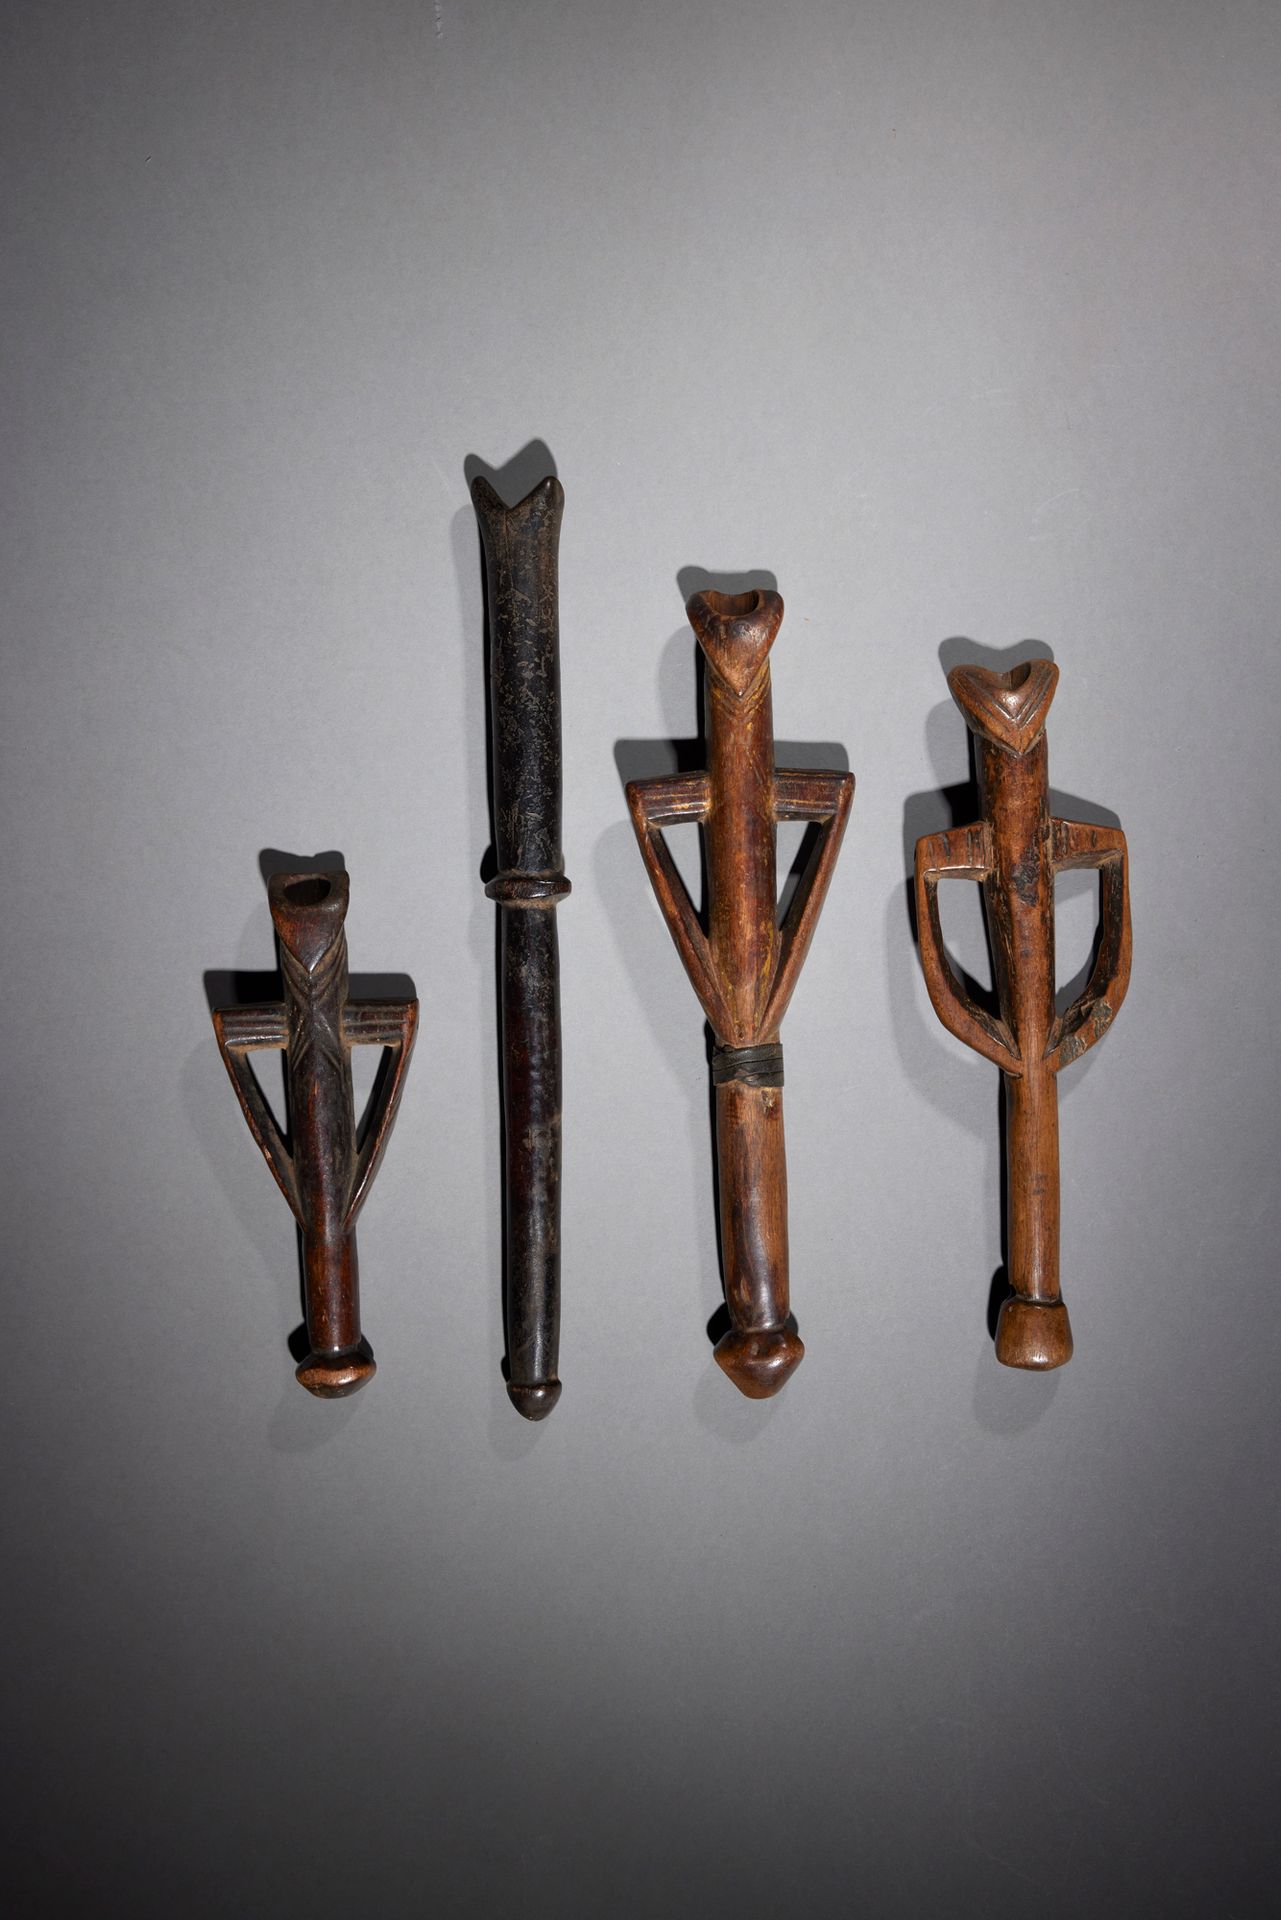 Null 四支长笛

布基纳法索

木头

H.19至34.5厘米



一套四支来自莫西、布瓦或努纳的长笛。因使用而产生的美丽铜锈。